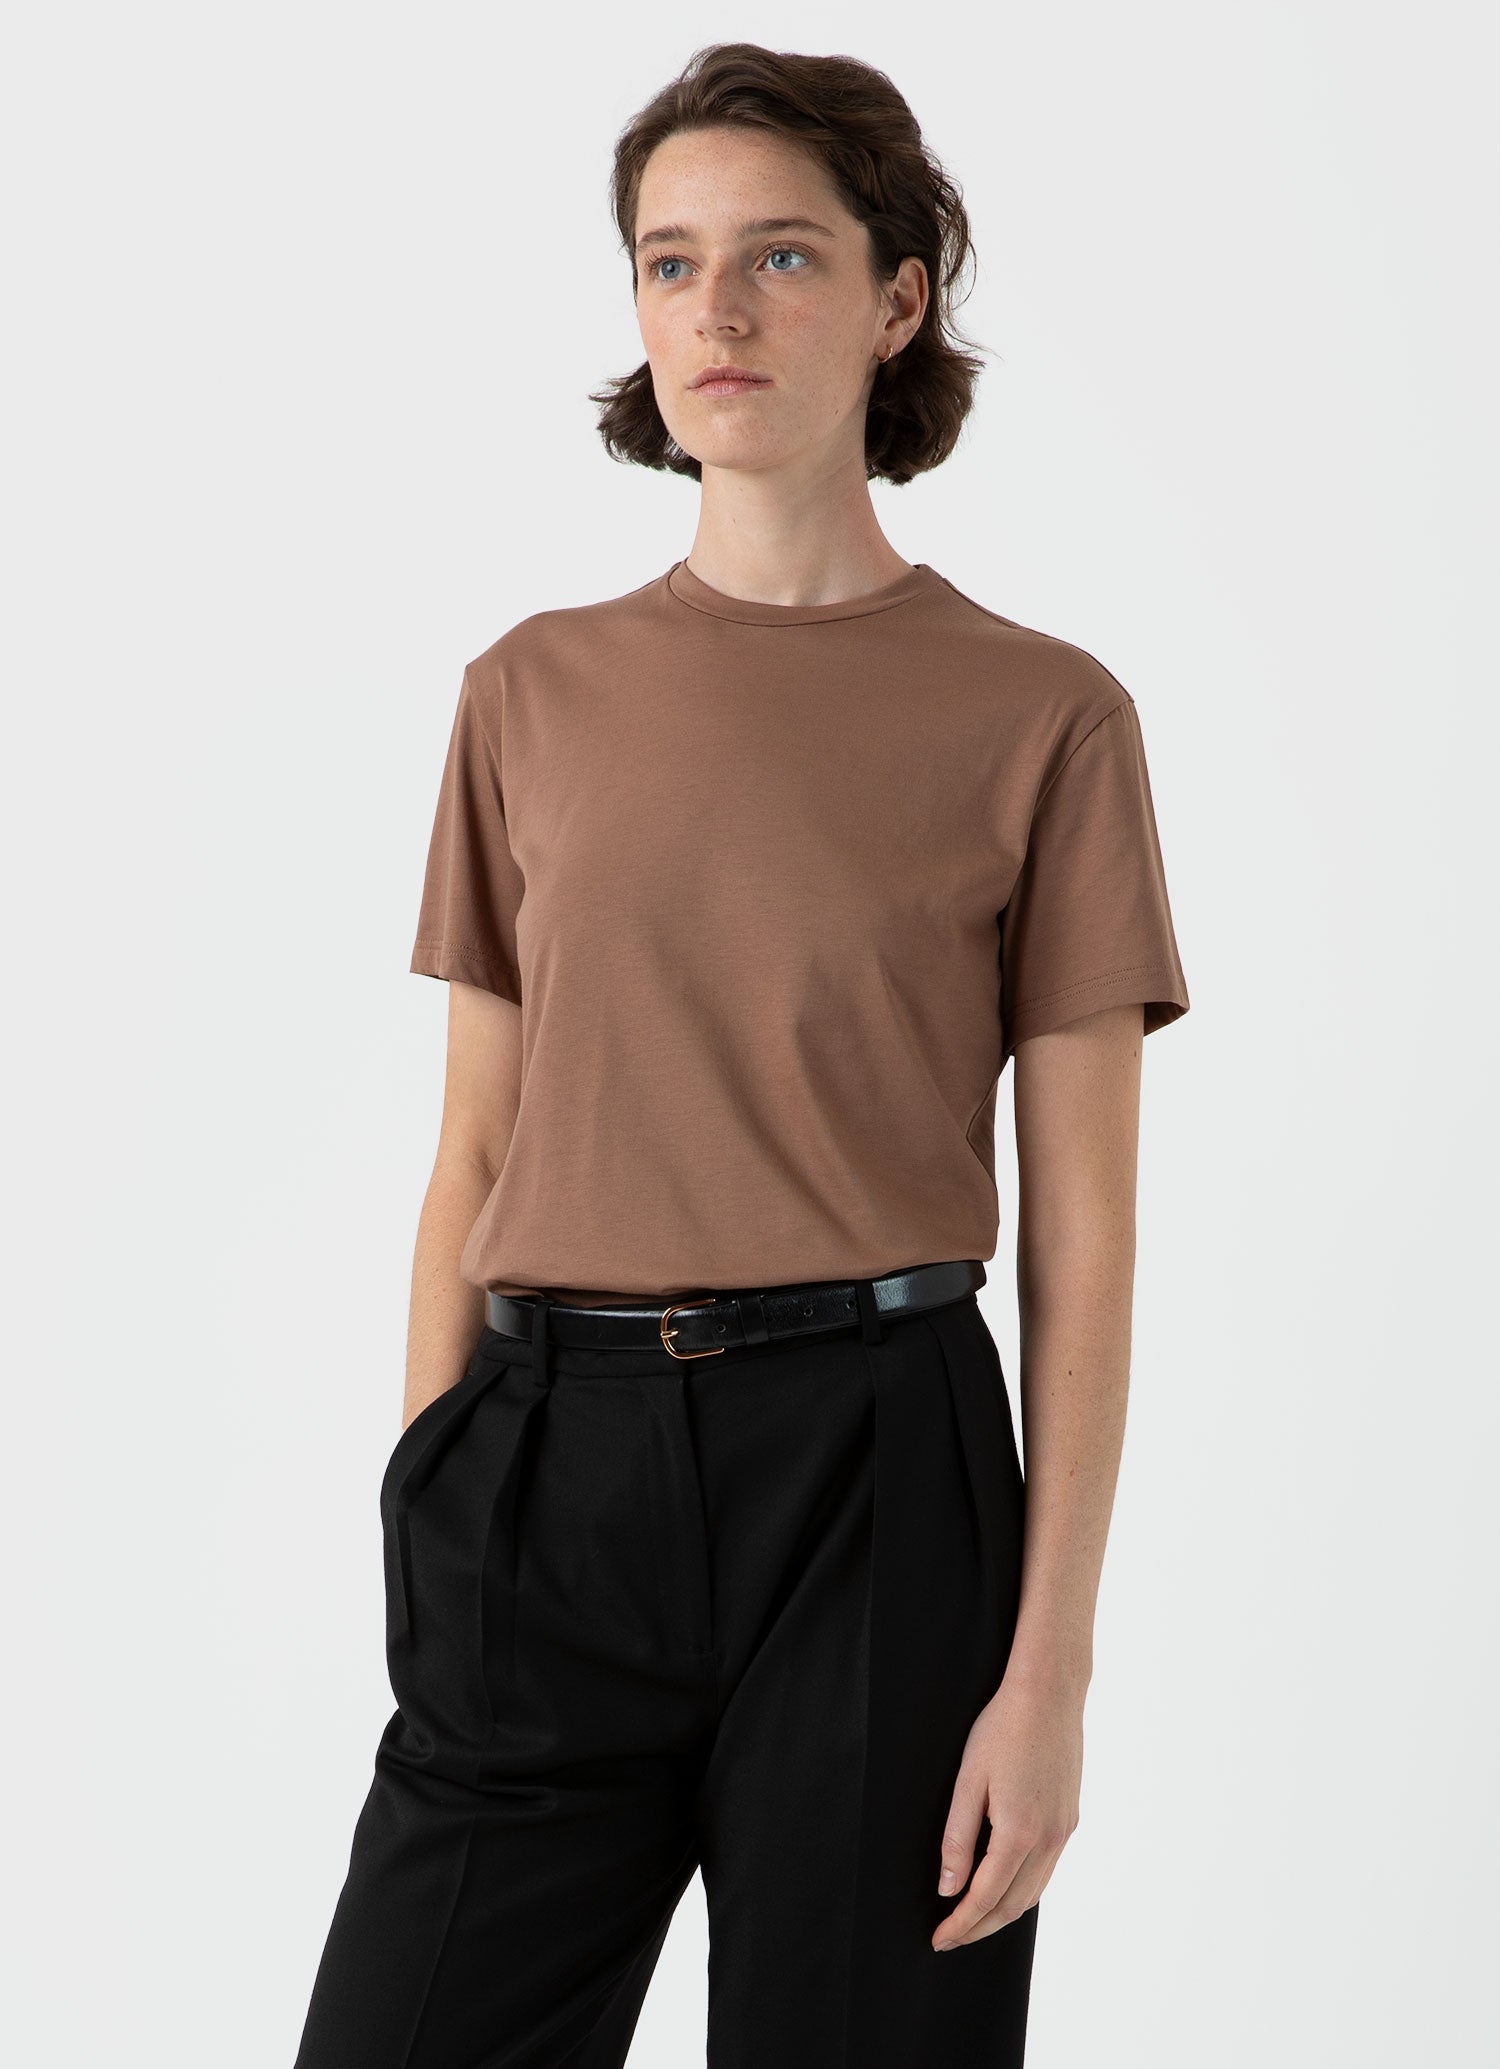 Women's Boy Fit T-shirt in Dark Sand